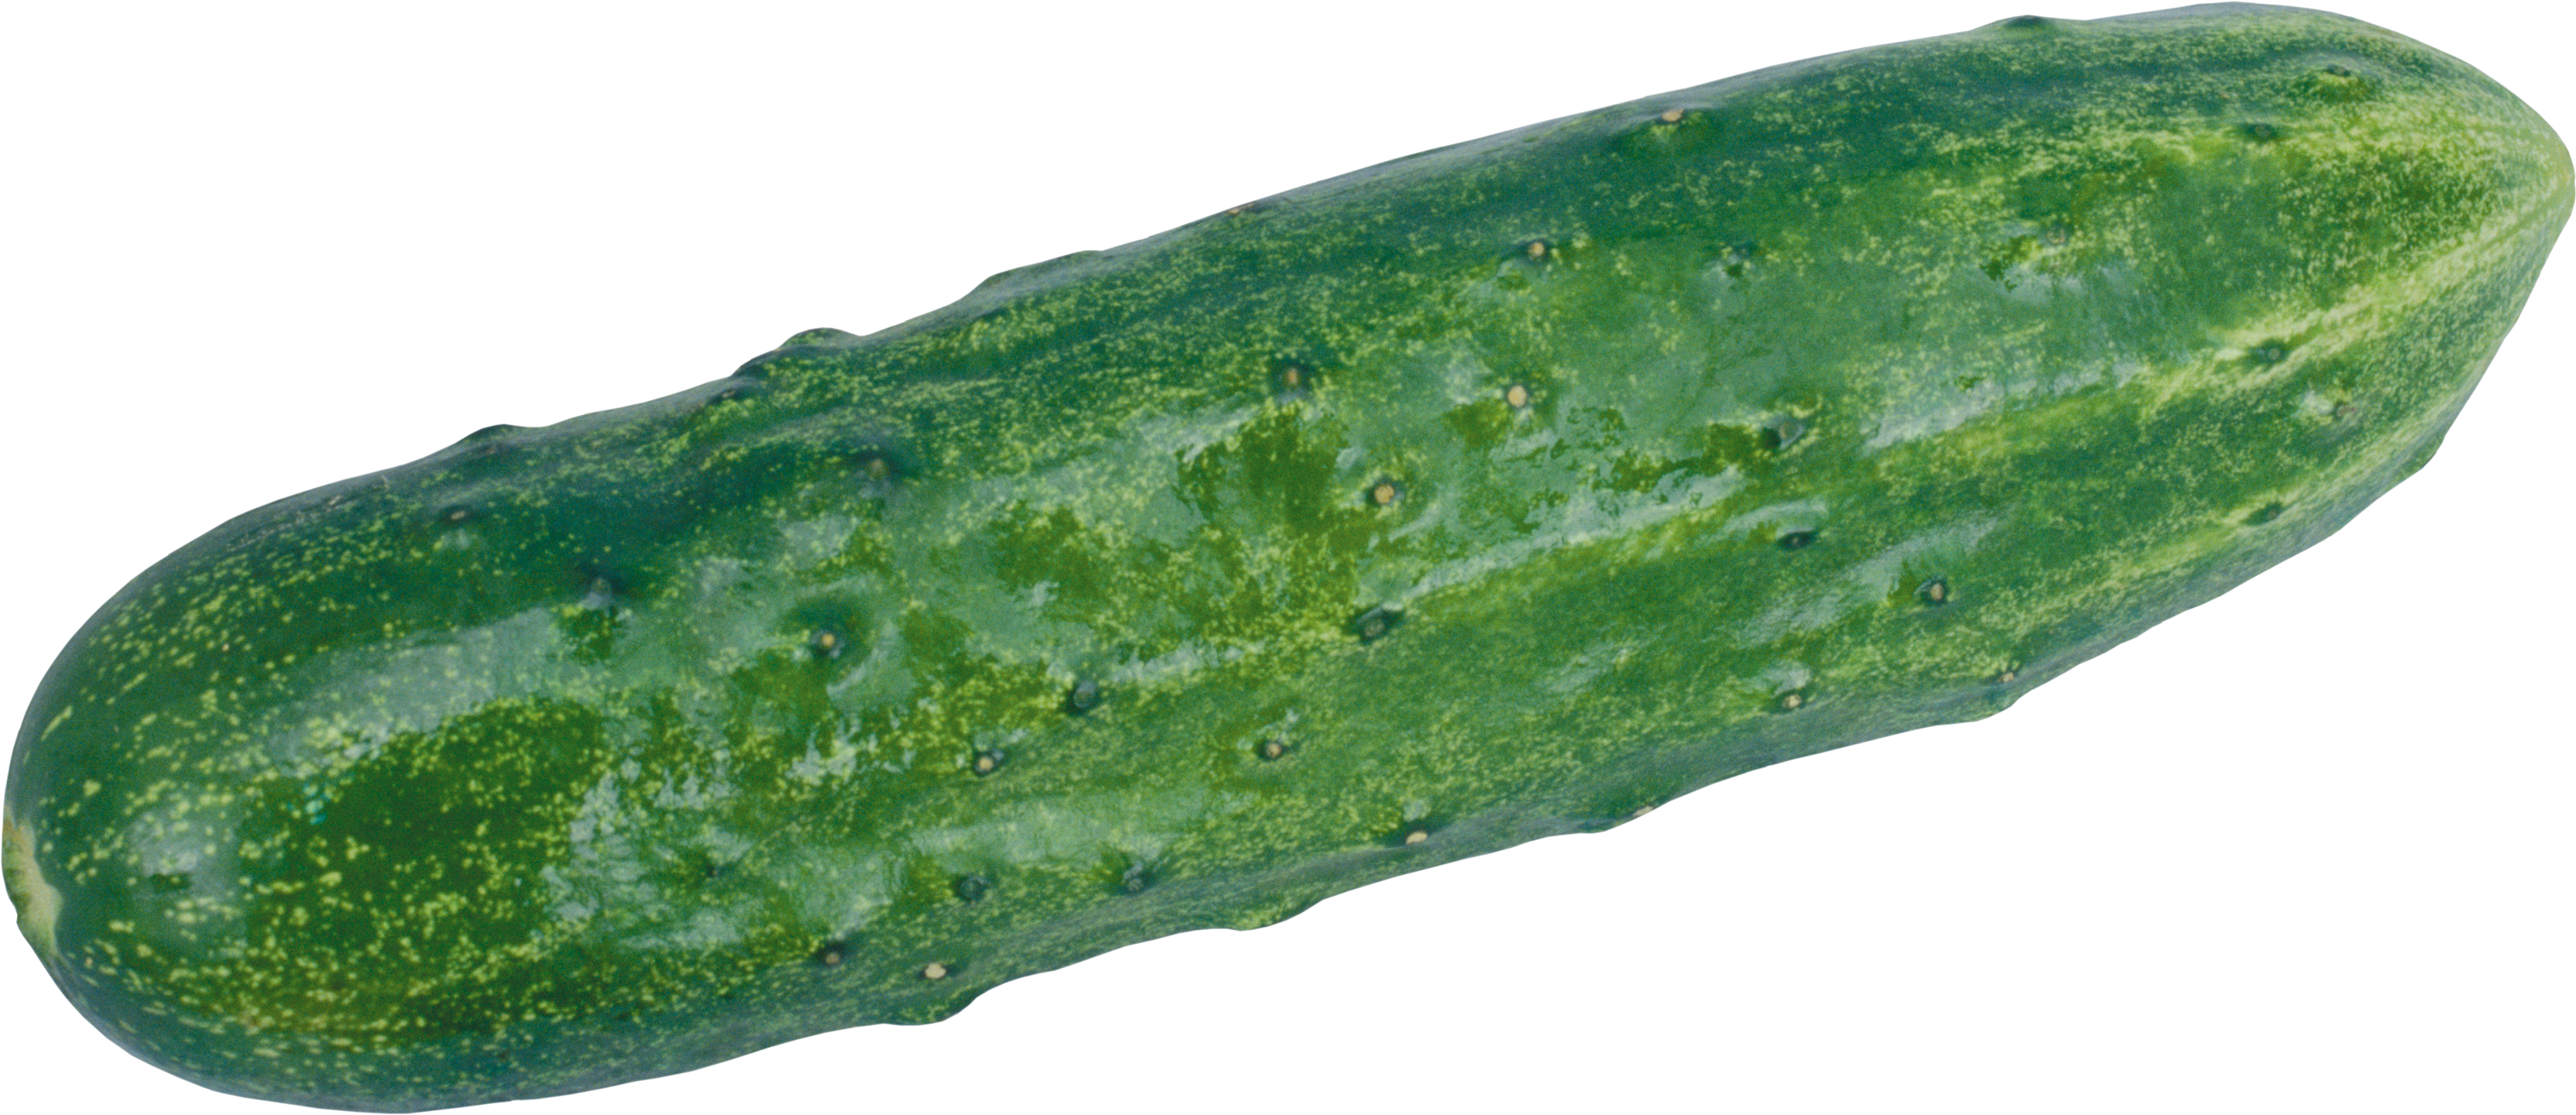 cucumber clipart file